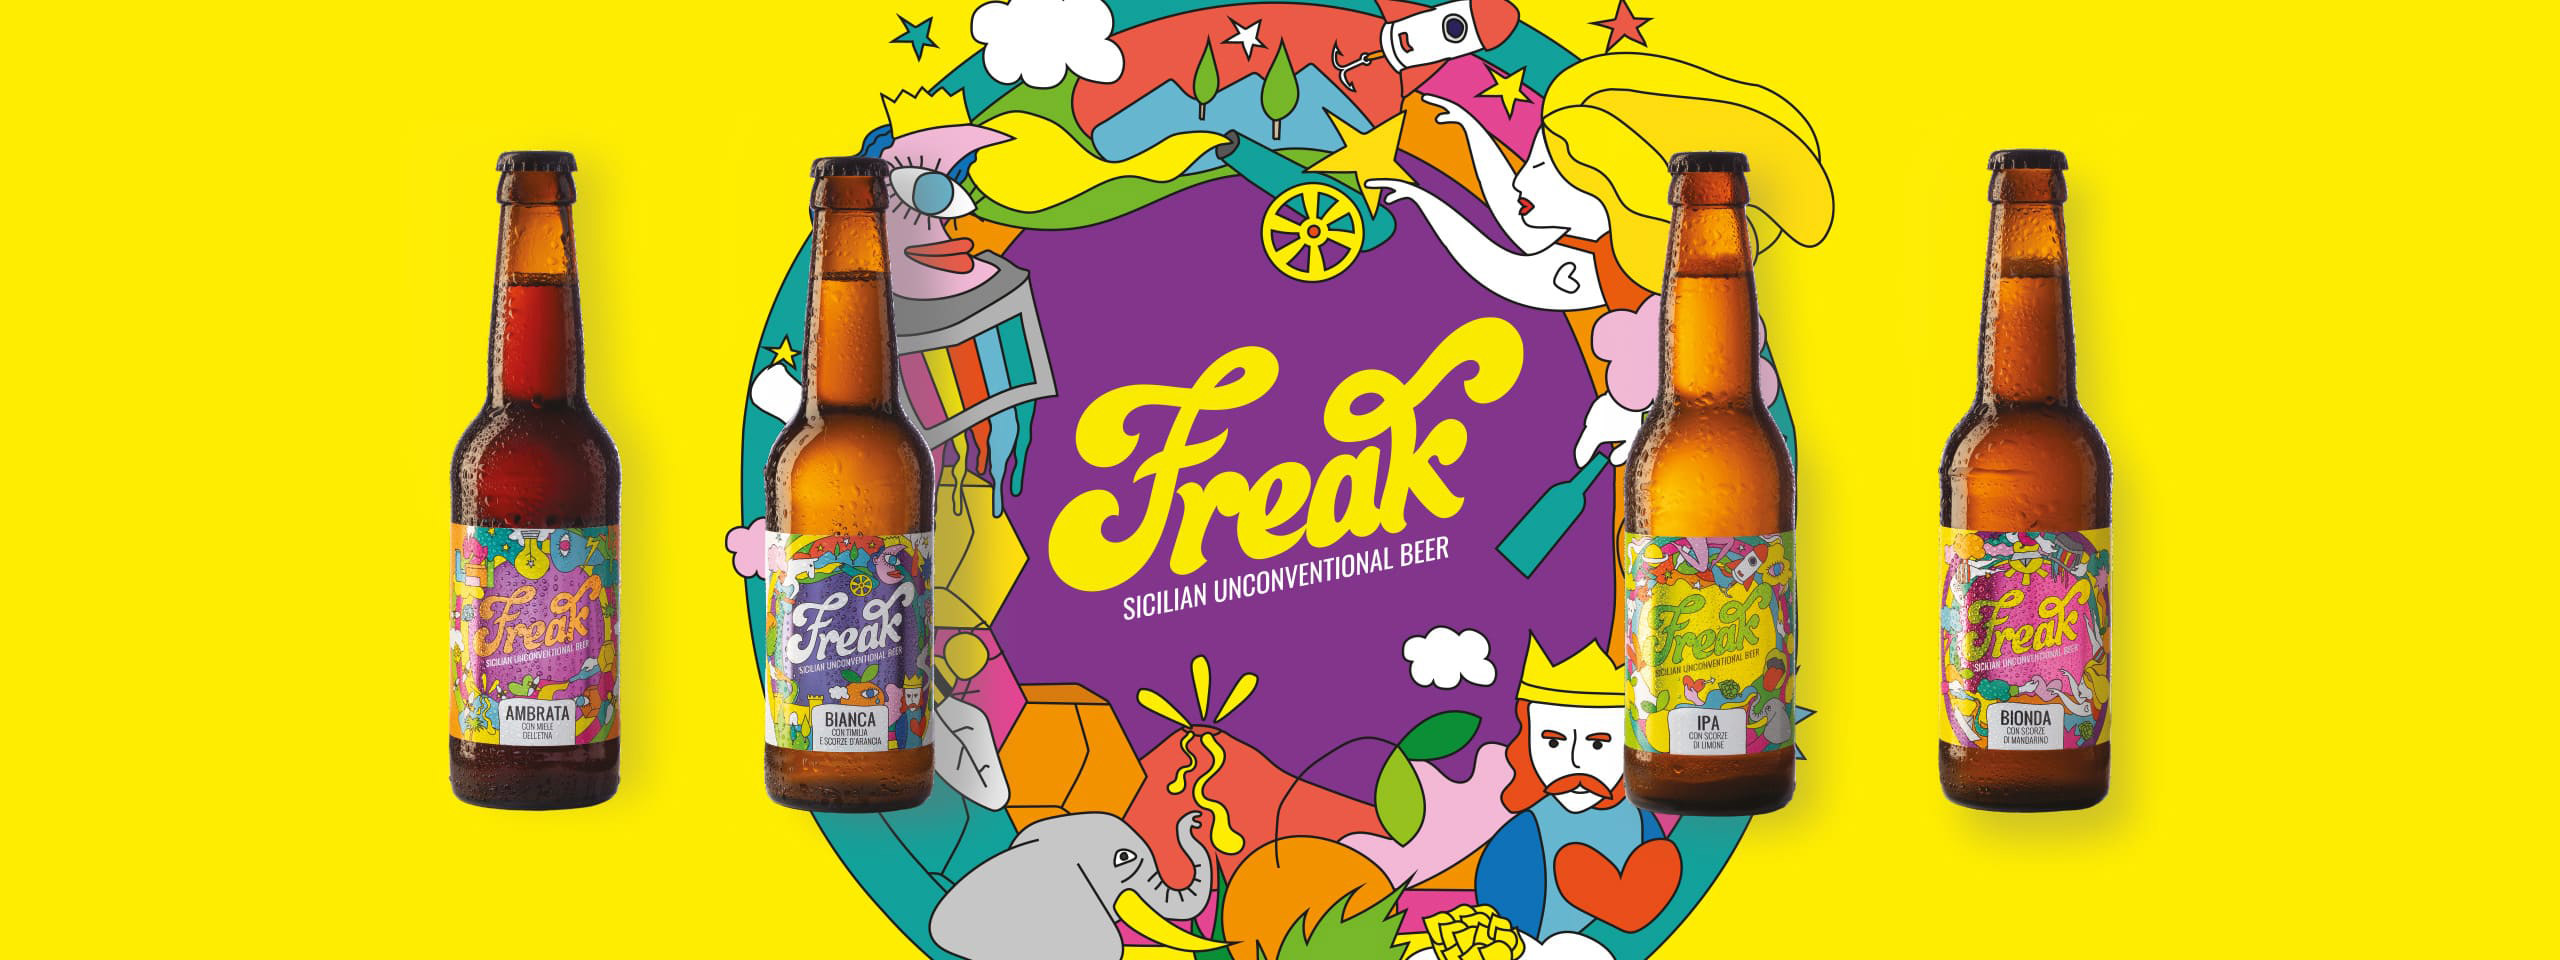 Grafiche etichette per le birre Freak, di Indfustria01